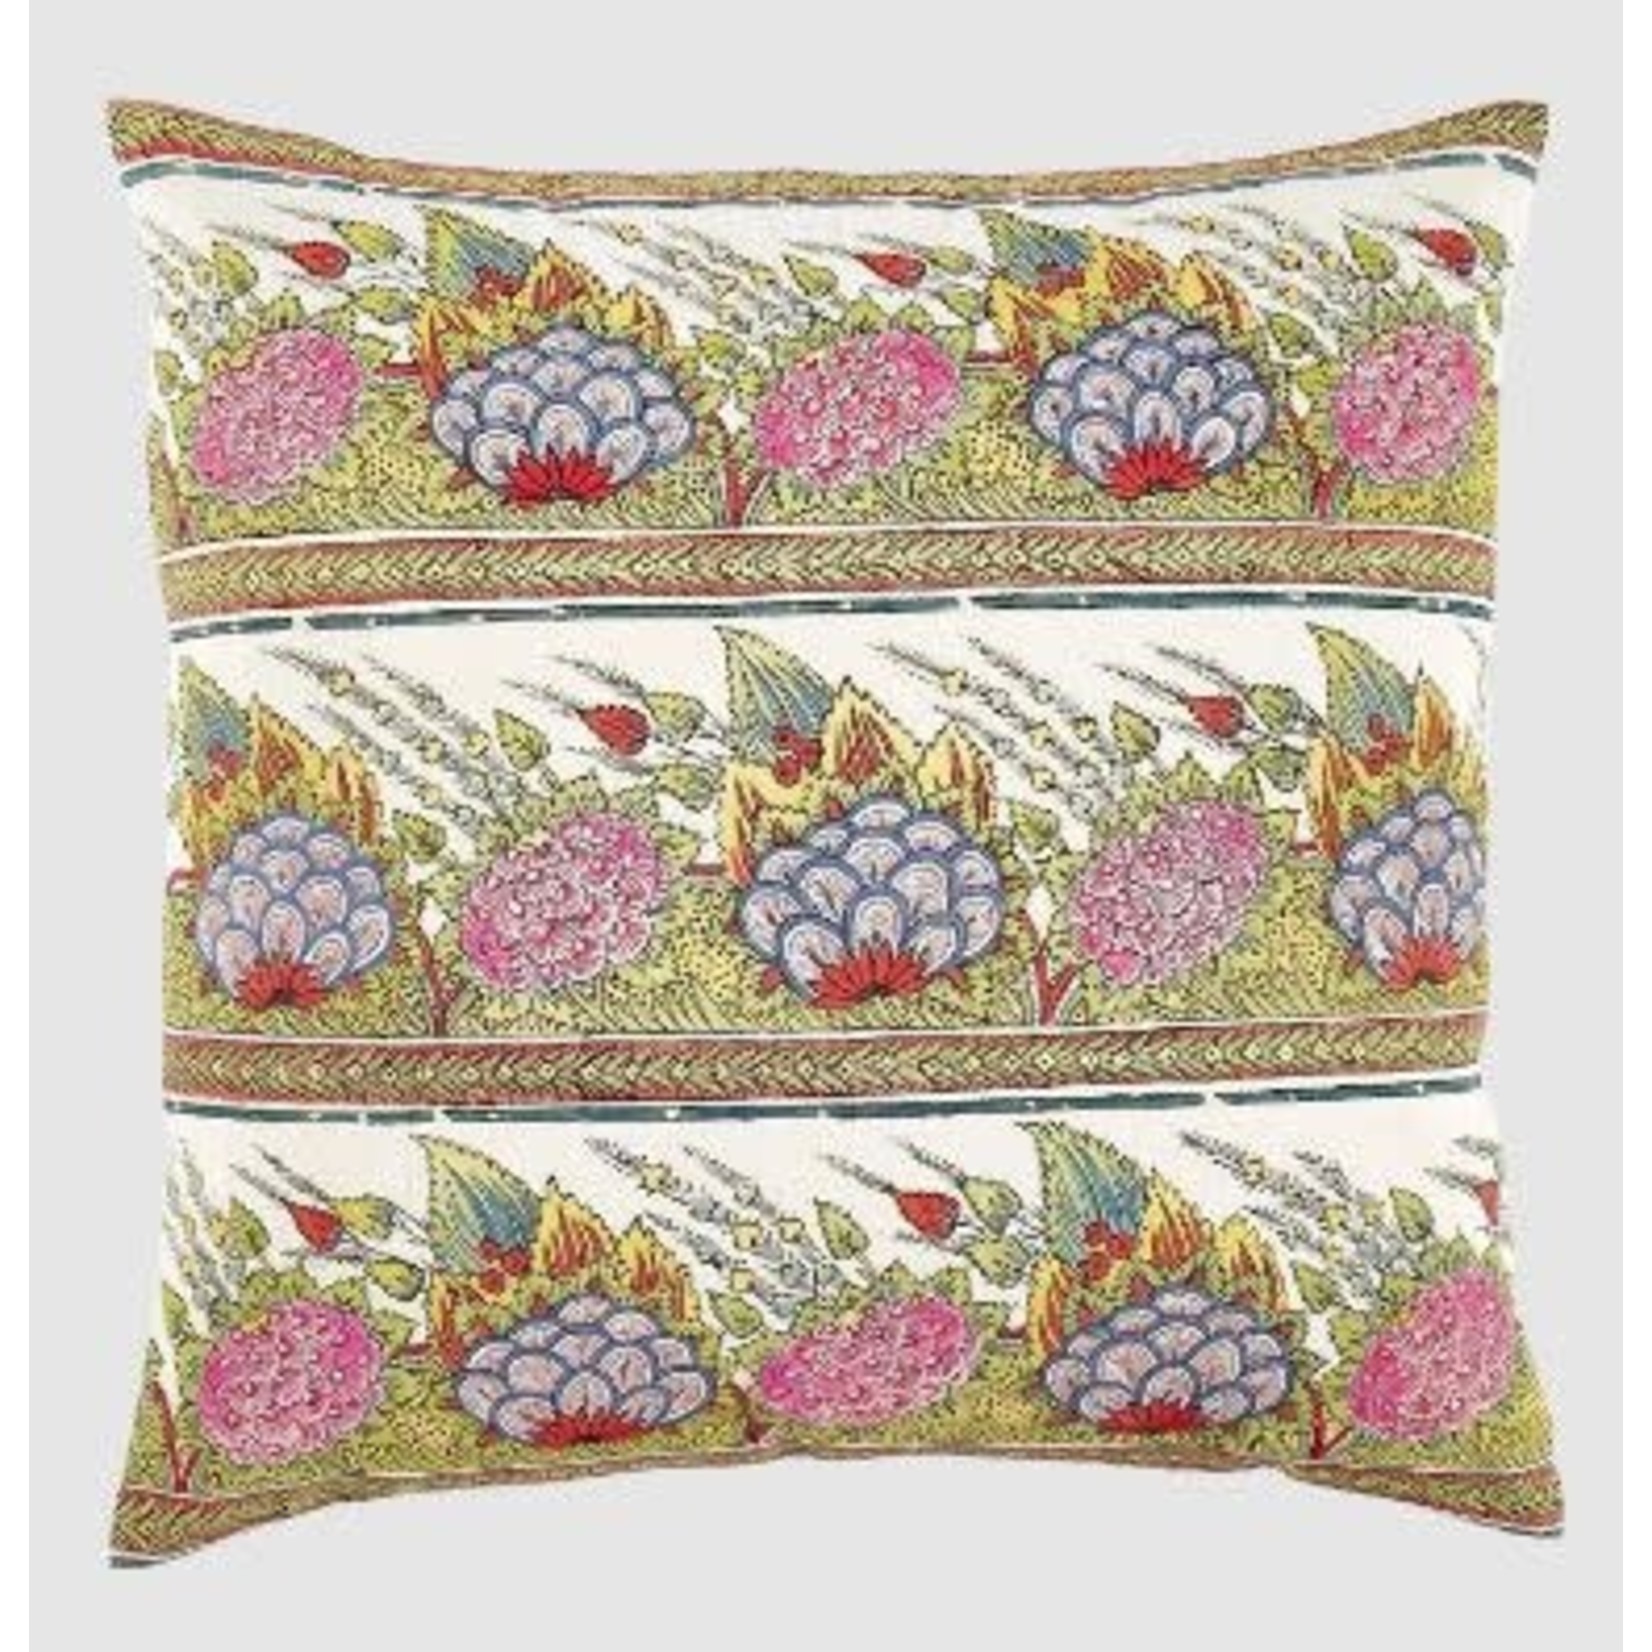 John Robshaw Textiles Ganika Decorative Pillow